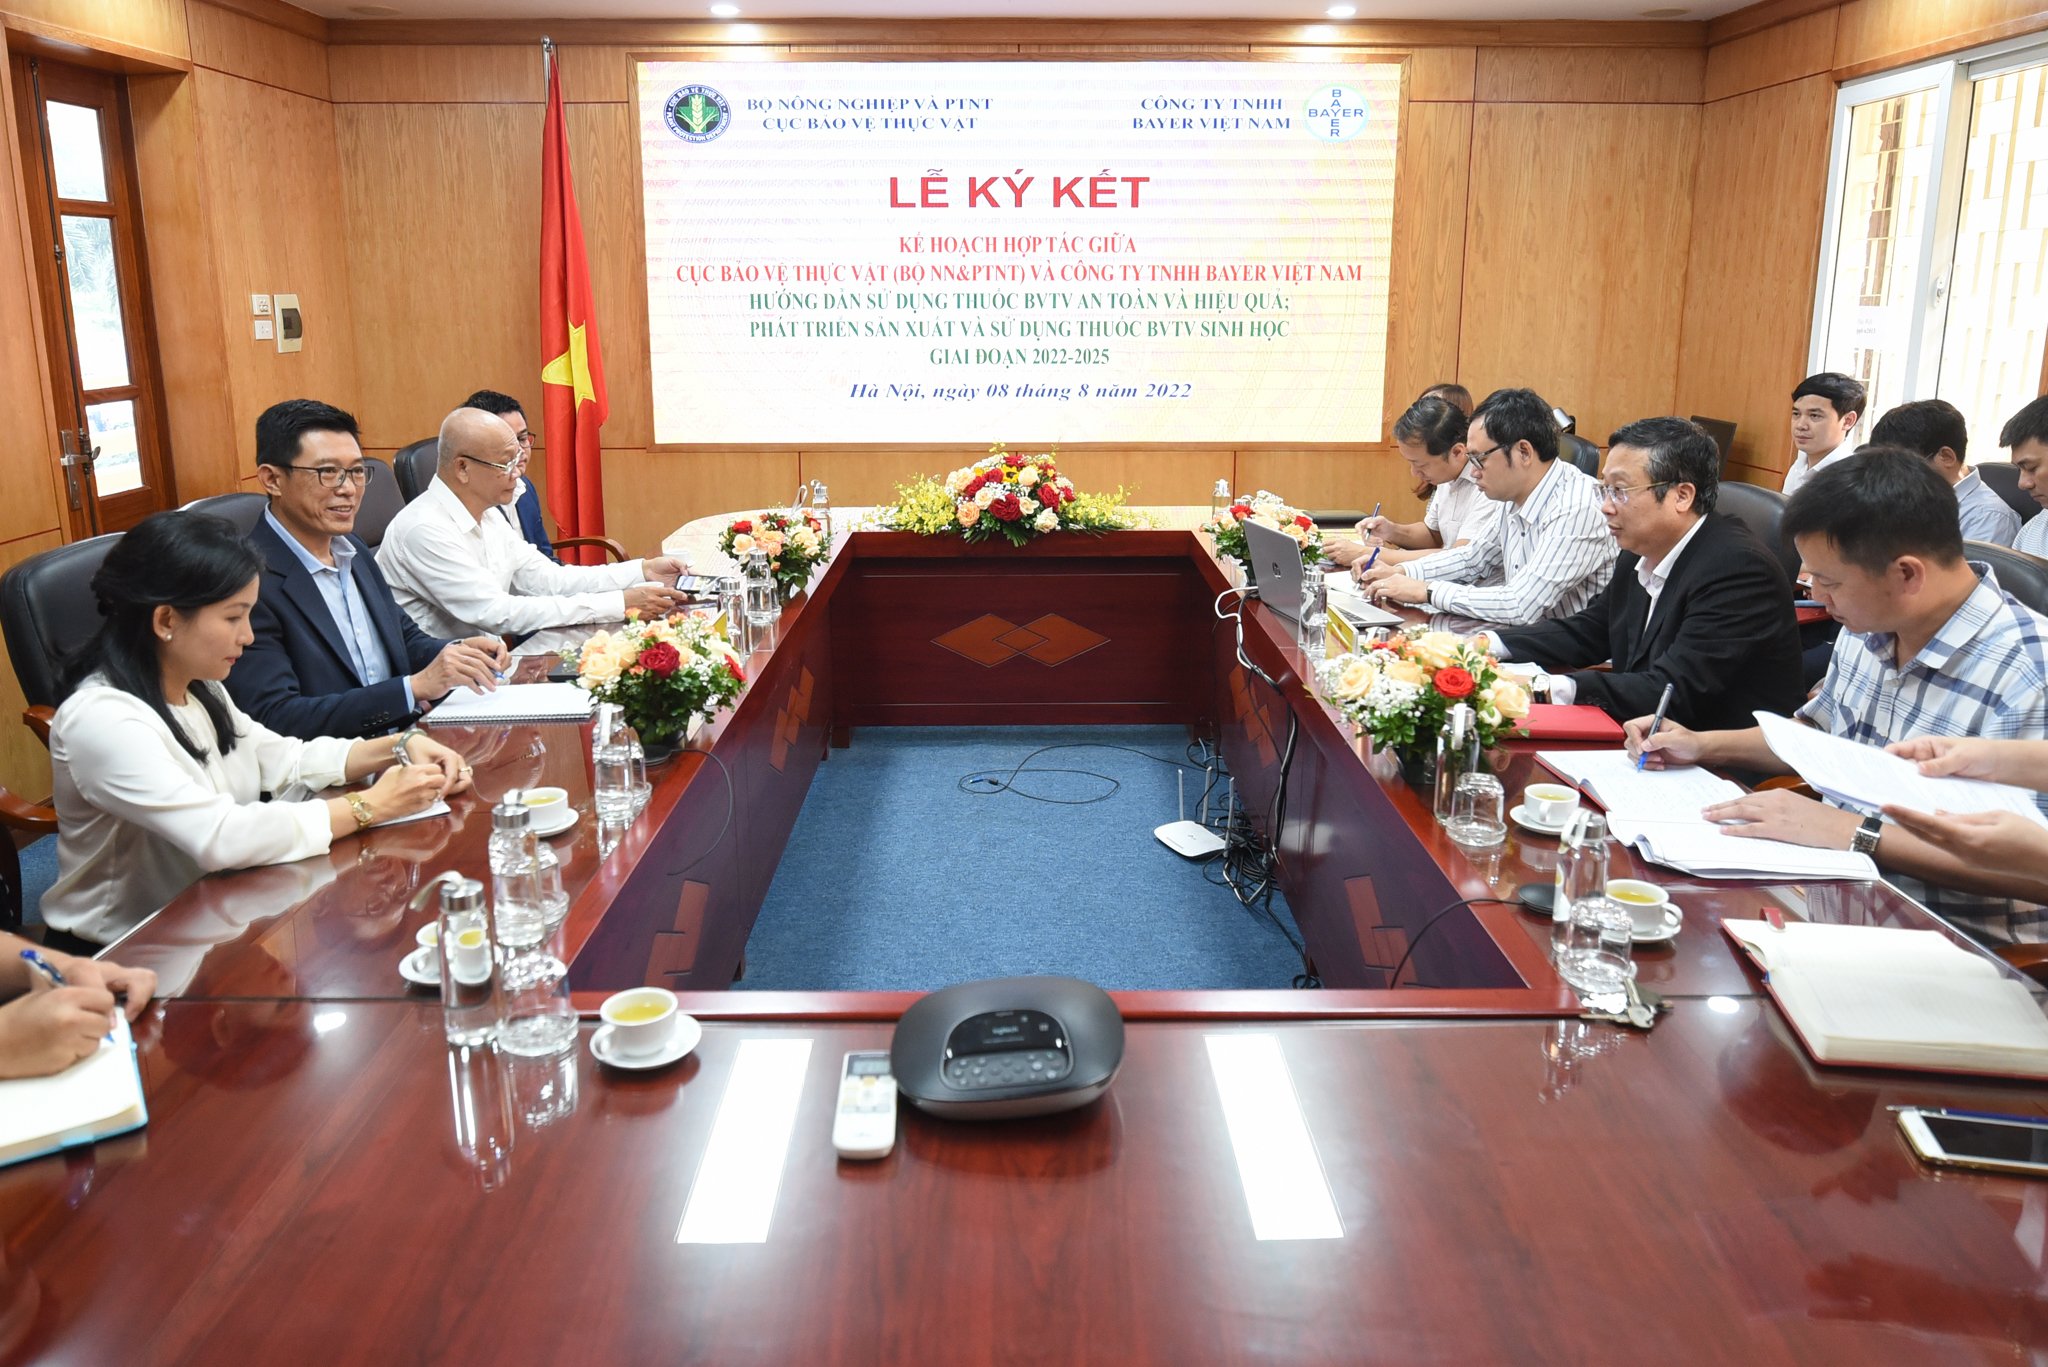 Cục BVTV và Công ty TNHH Bayer Việt Nam ký kế hoạch hợp tác hướng dẫn sử dụng thuốc BVTV an toàn, hiệu quả và đẩy mạnh sản xuất, sử dụng thuốc BVTV sinh học. Ảnh: Tùng Đinh.